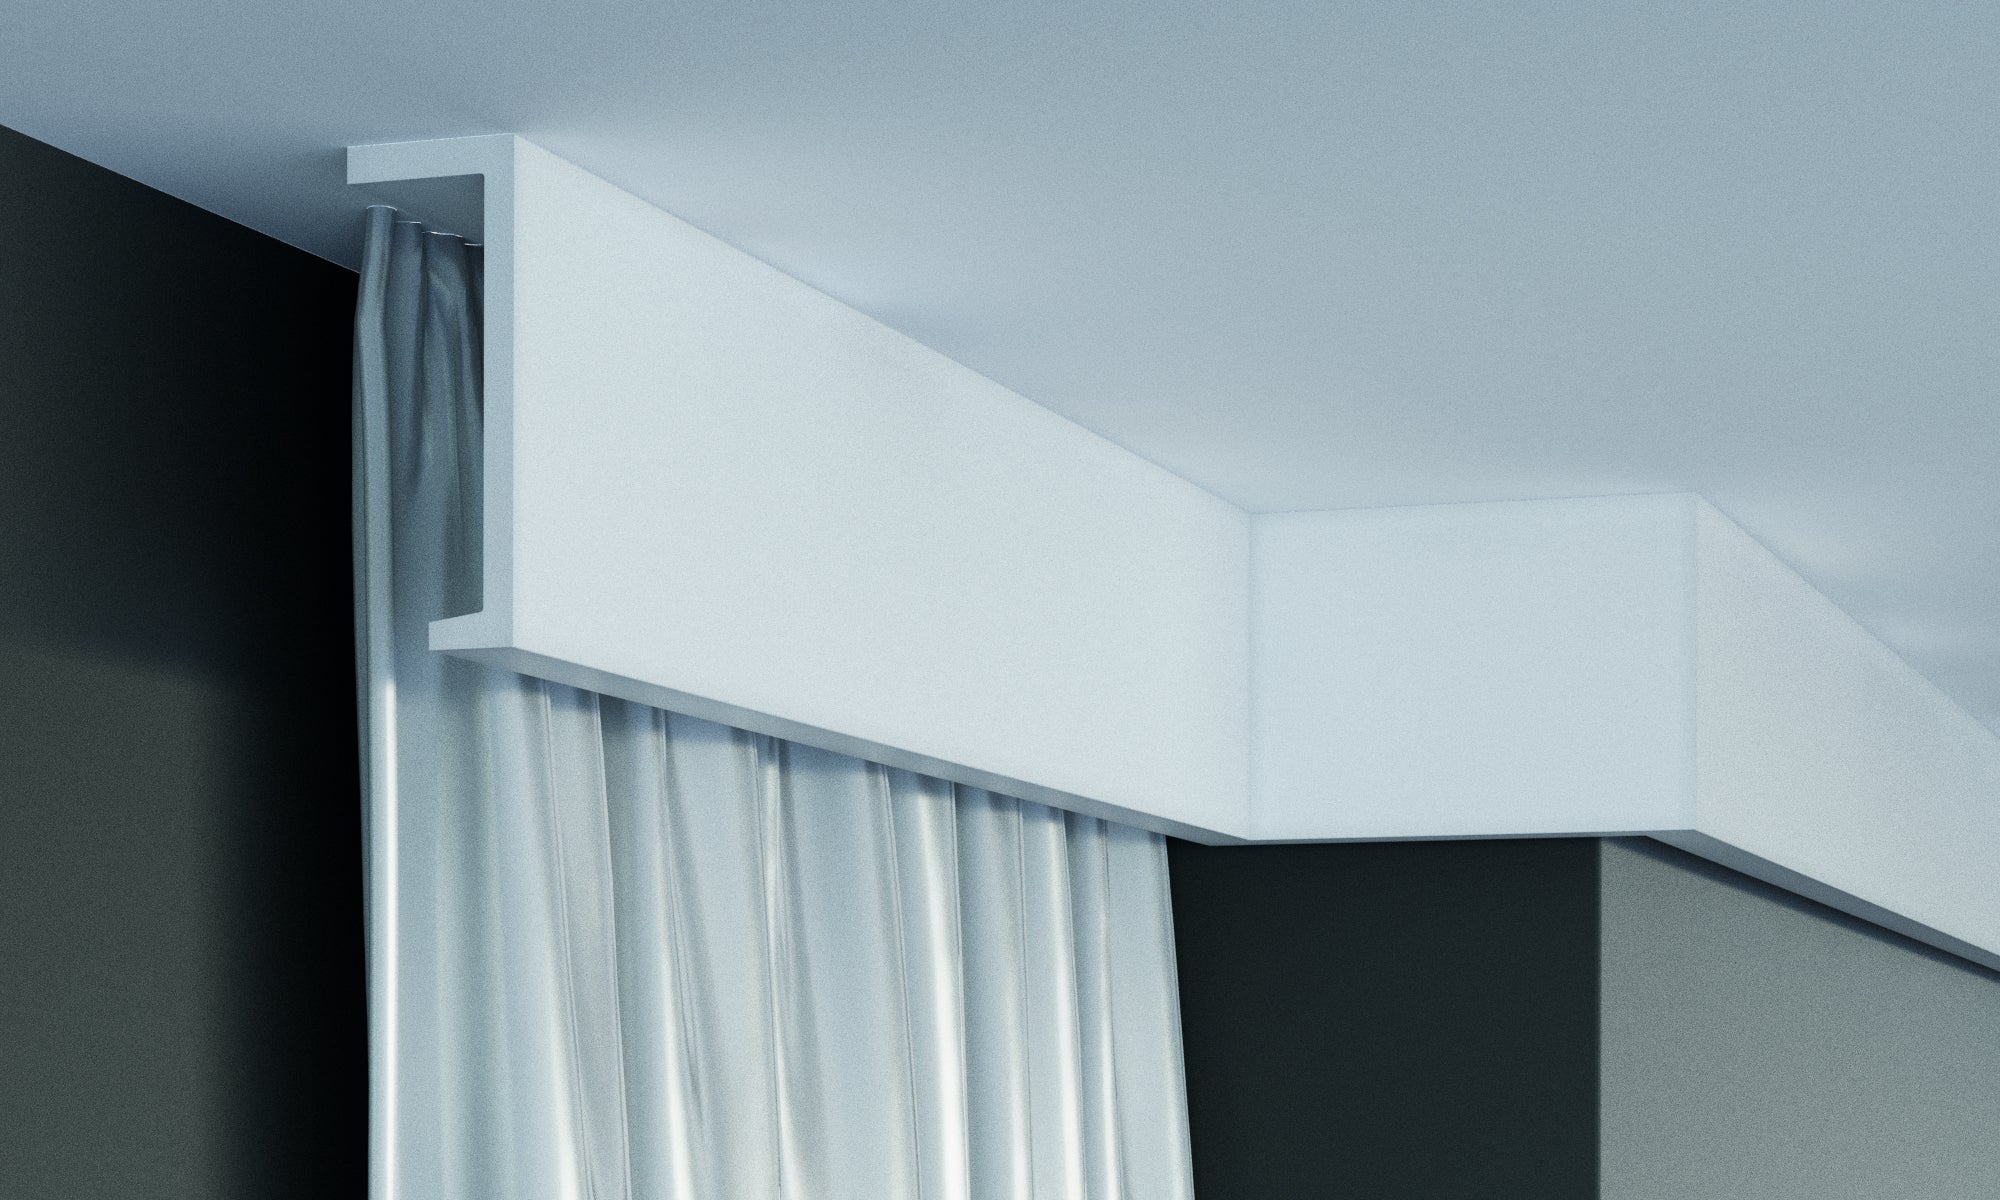 P890 - Cornici velette per led a soffitto e parete per illuminazione indiretta con le strisce led o faretti per cartongesso - 2 metri